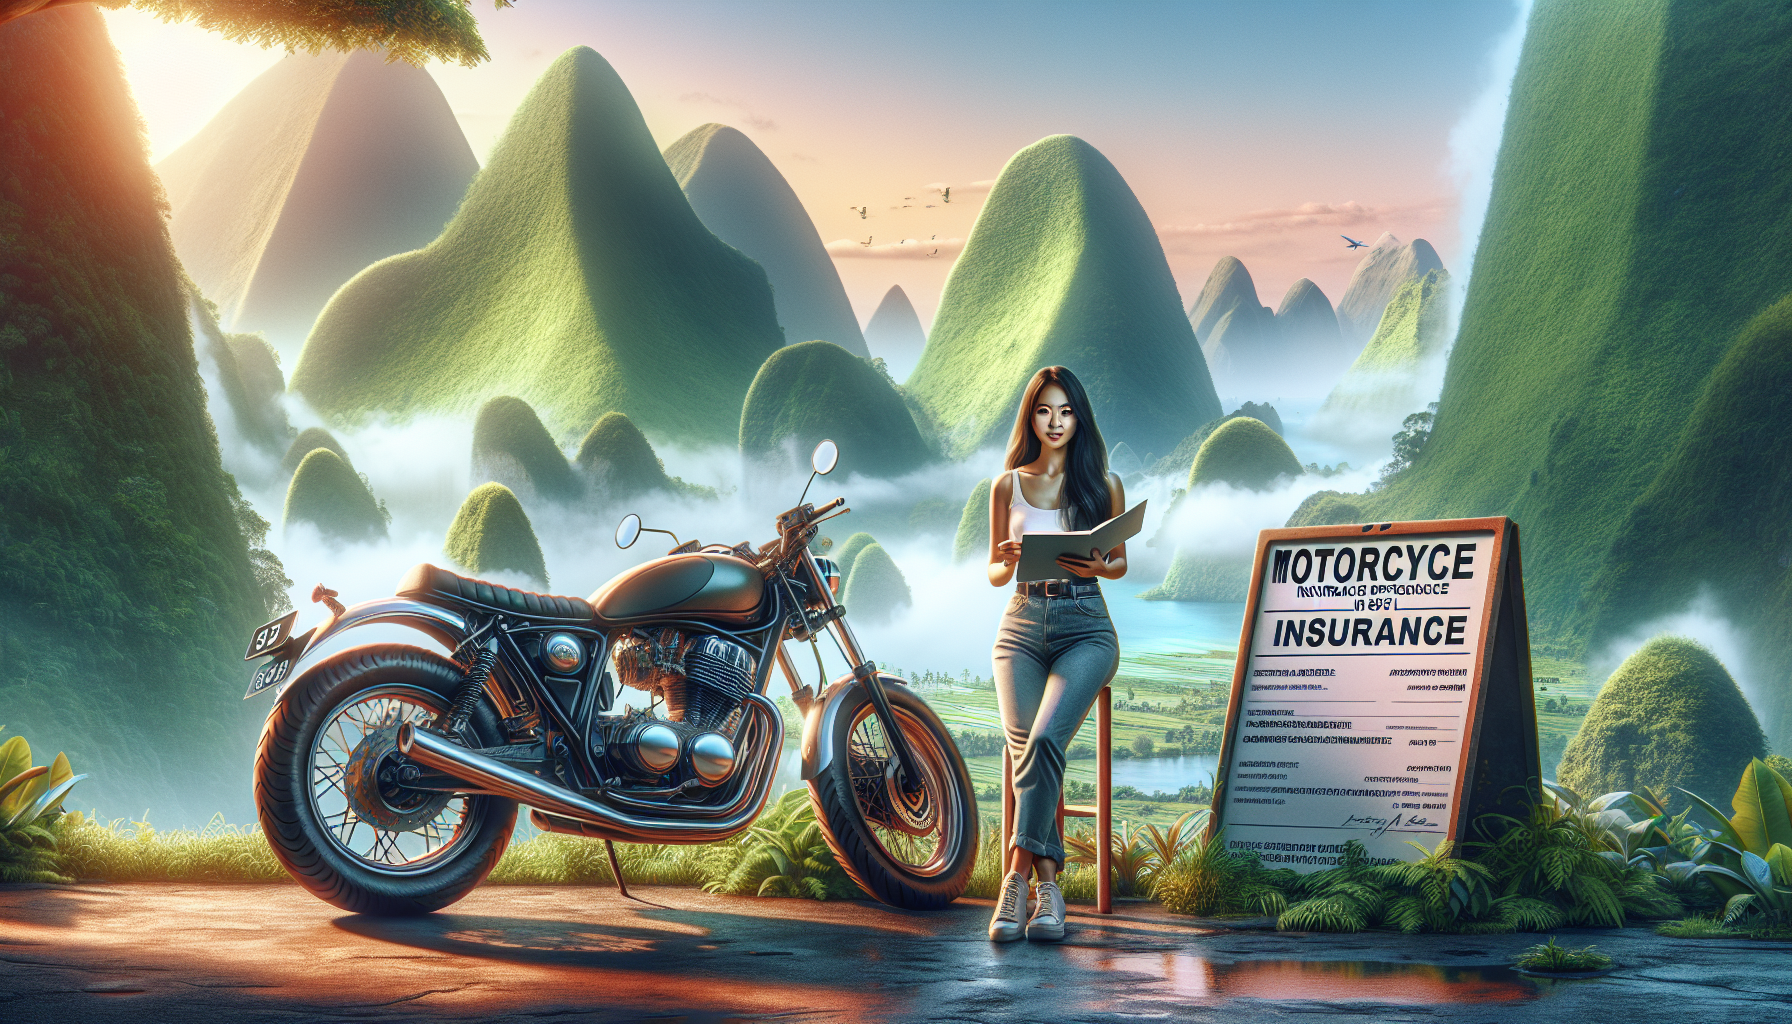 trouvez une assurance moto adaptée à la réunion avec des assureurs spécialisés en assurance moto 974.